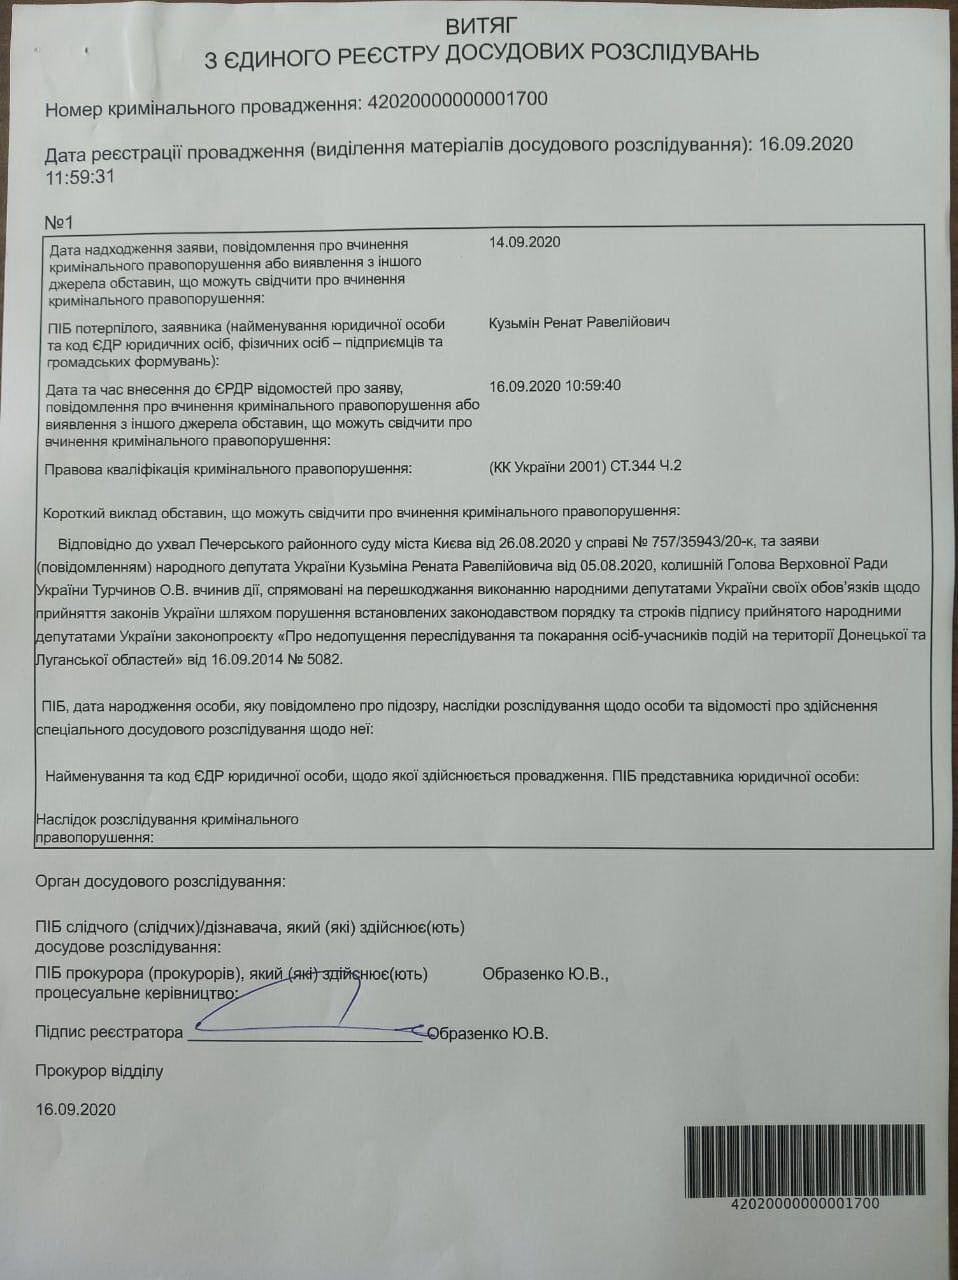 Офис генпрокурора открыл дело из-за отказа Турчинова подписывать закон об амнистии "ЛДНР" в 2014 году. Фото: Ренат Кузьмин